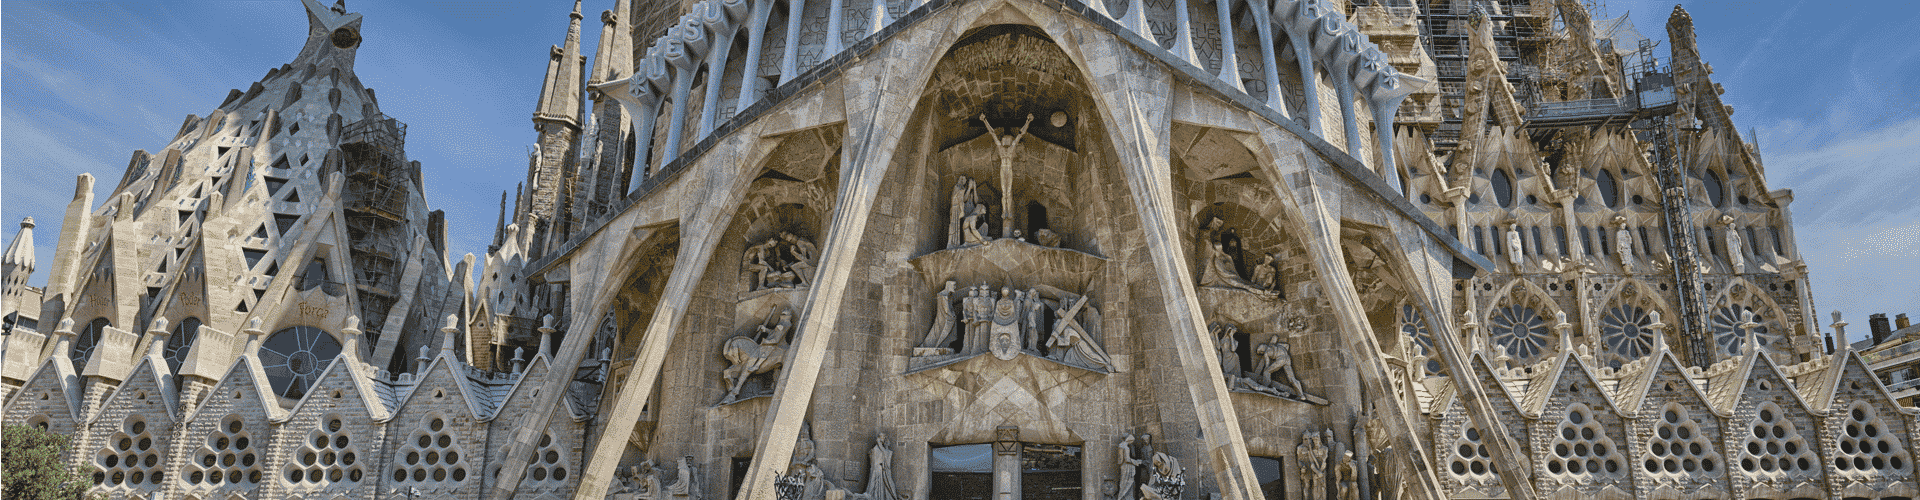 Free Sagrada Familia Tour Banner